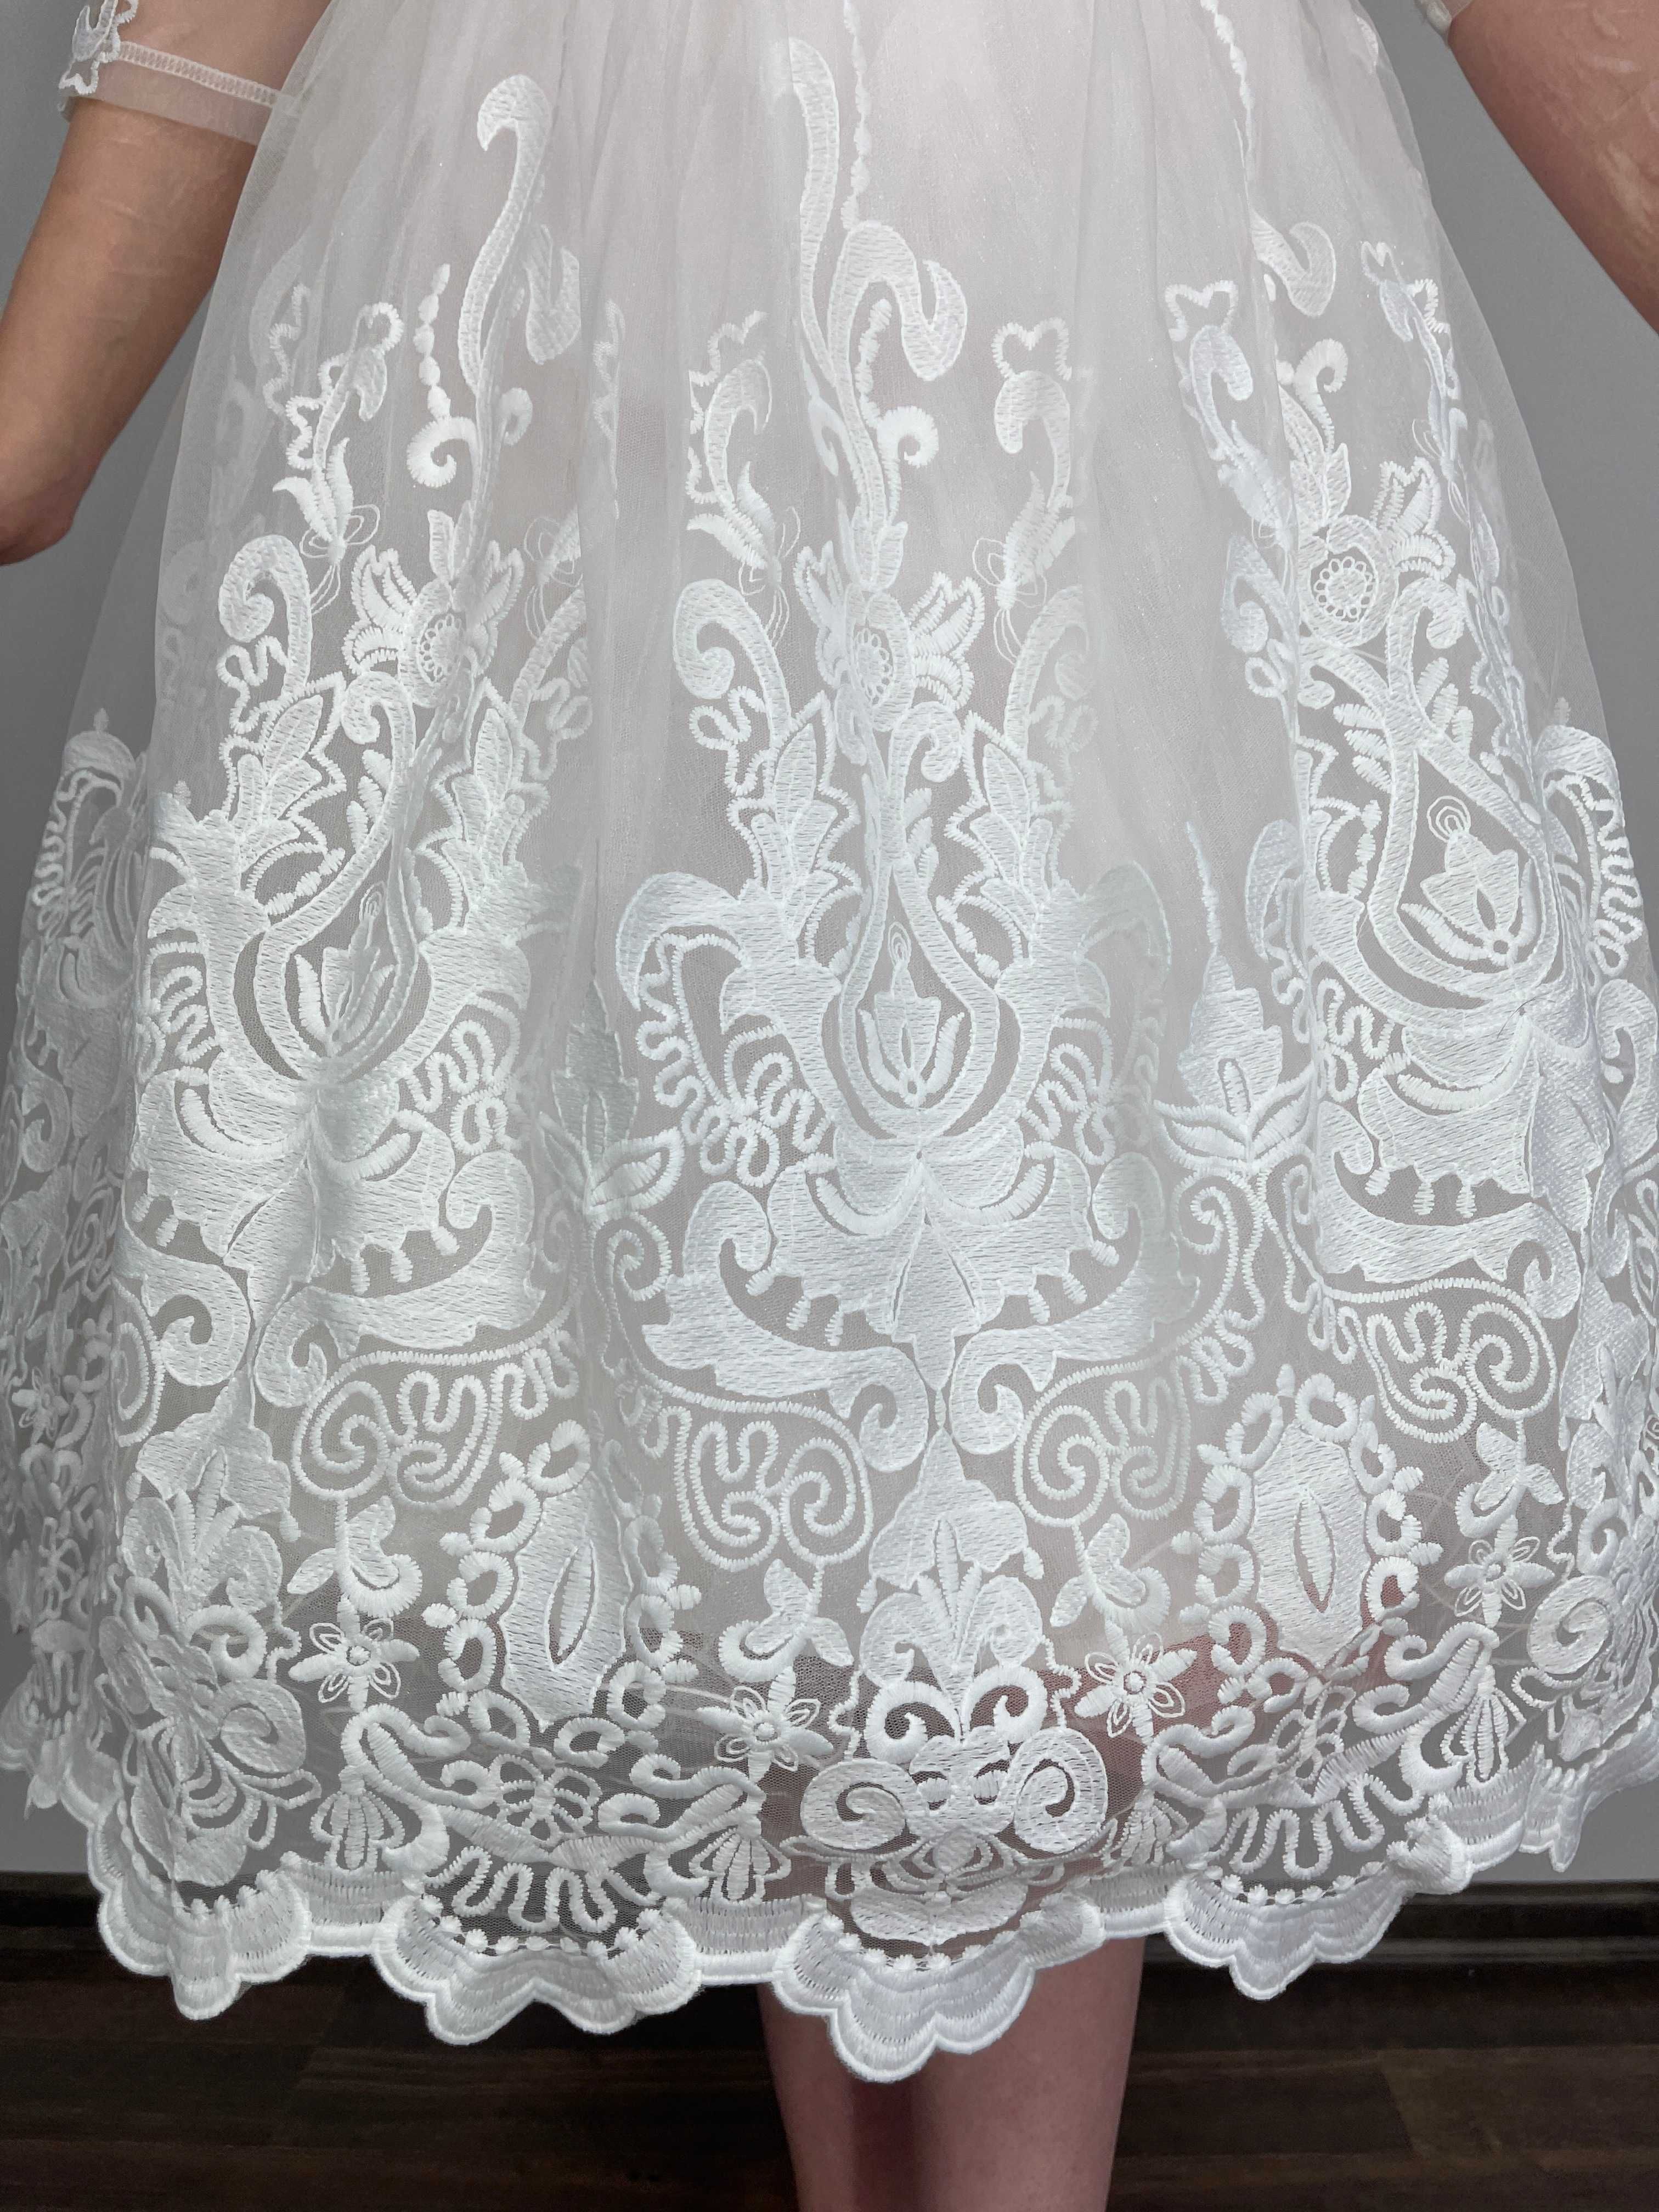 Suknia ślubna inspirowana modą lat 50 w stylu retro midi